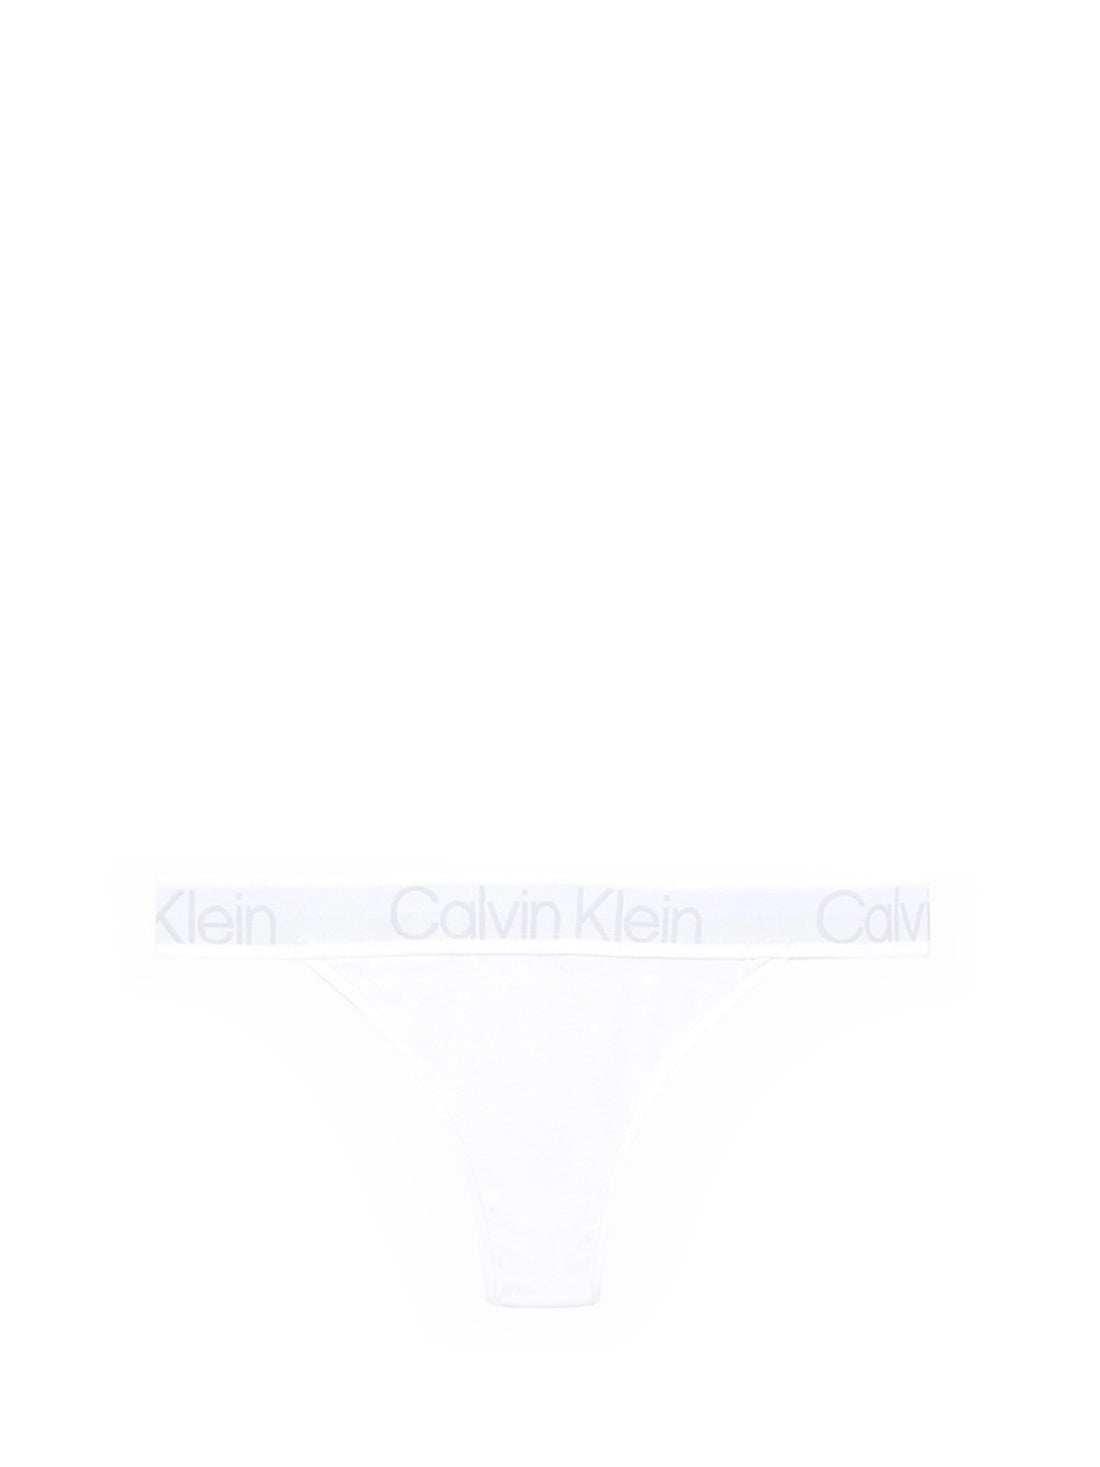 Perizomi Bianco Calvin Klein Underwear